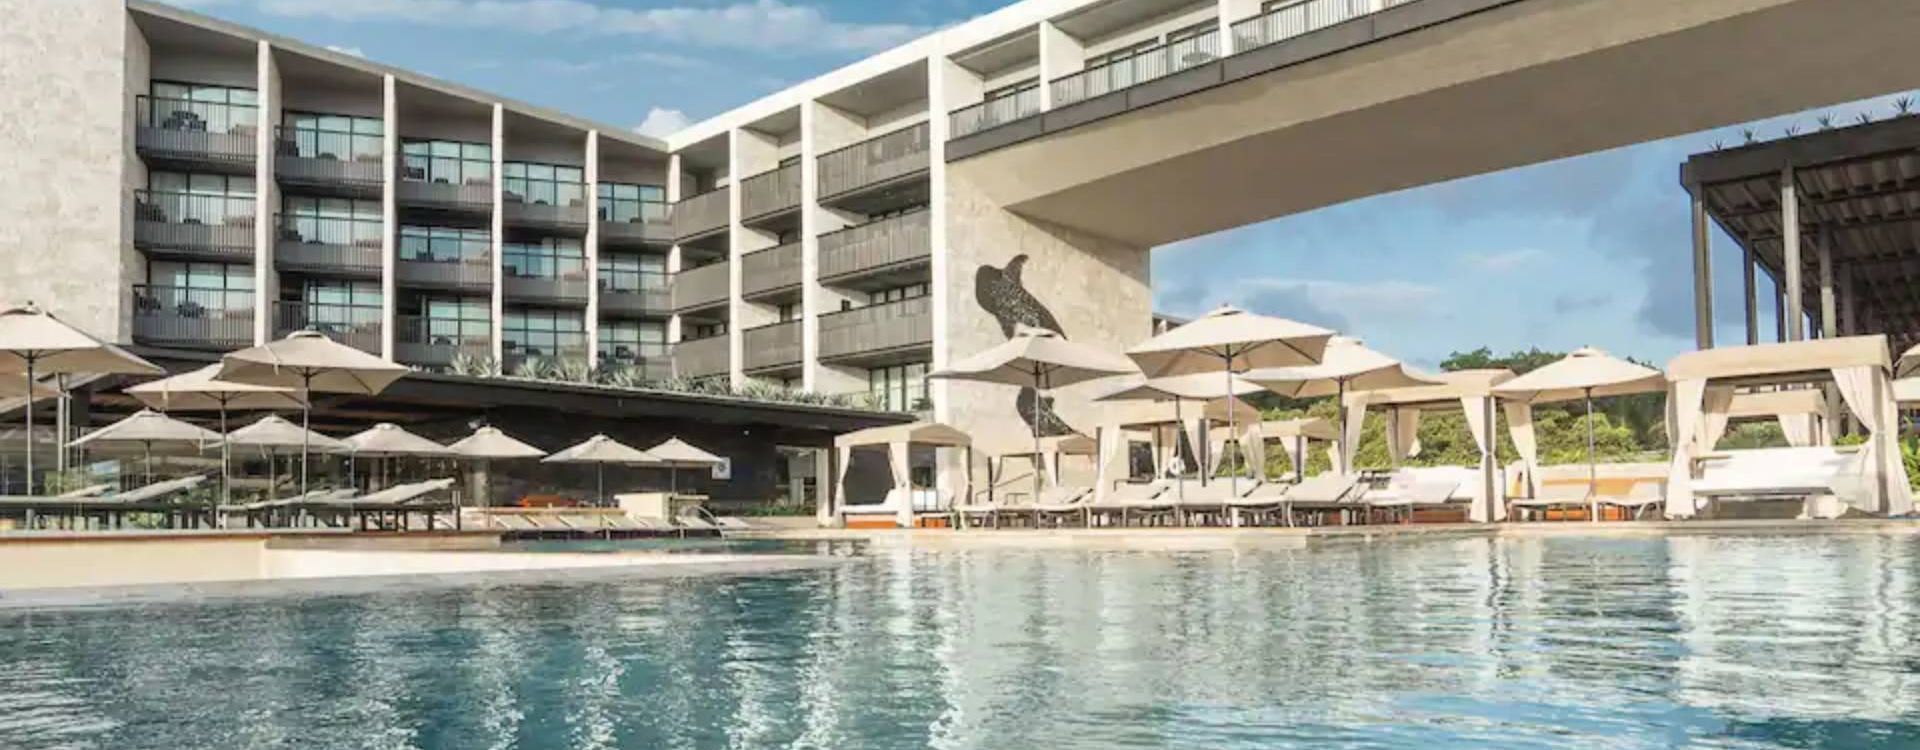 Grand Hyatt Playa del Carmen Resort exterior.jpg